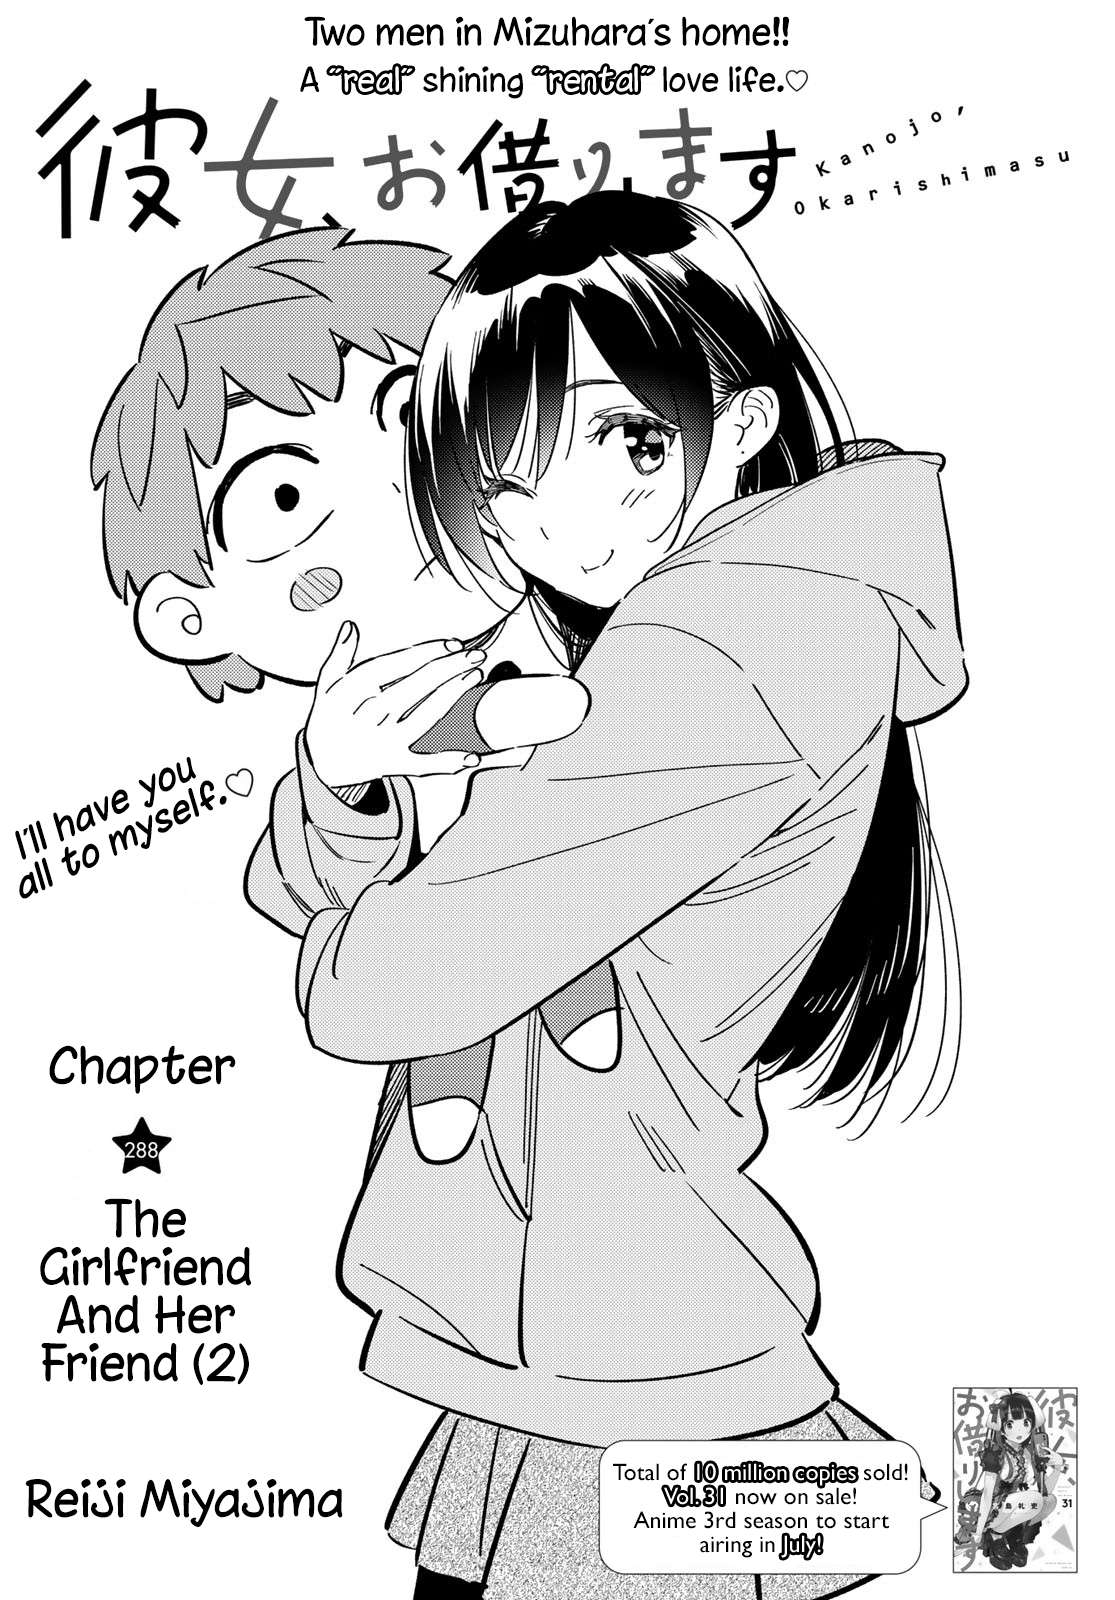 Rent a Girlfriend, chapter 288